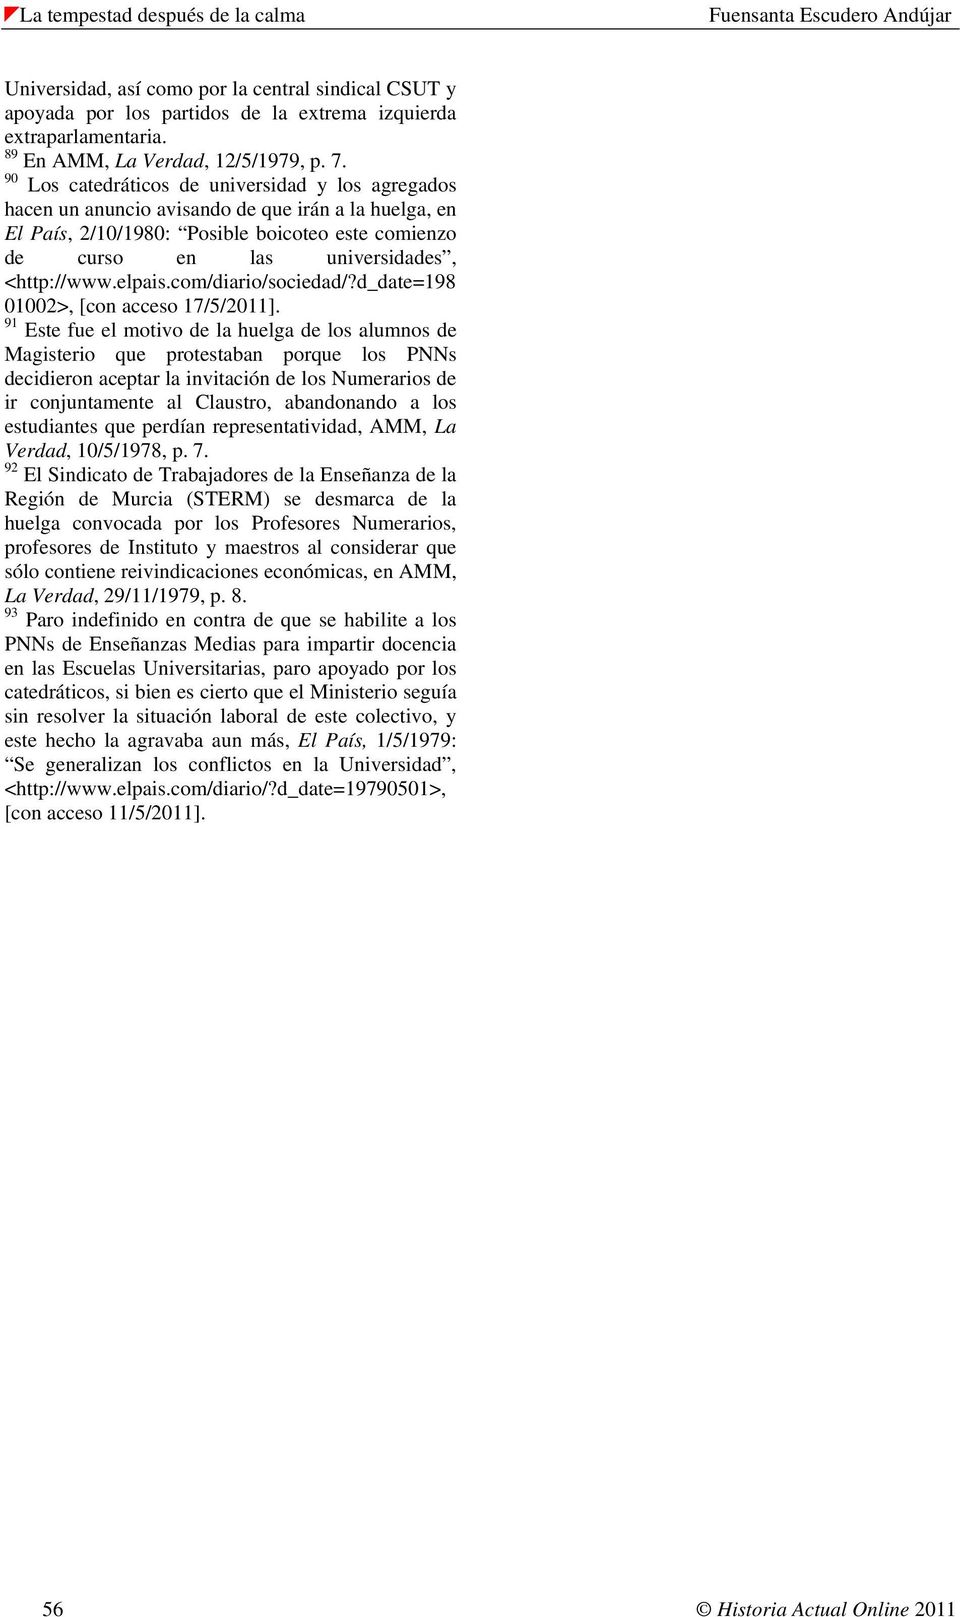 elpais.com/diario/sociedad/?d_date=198 01002>, [con acceso 17/5/2011].